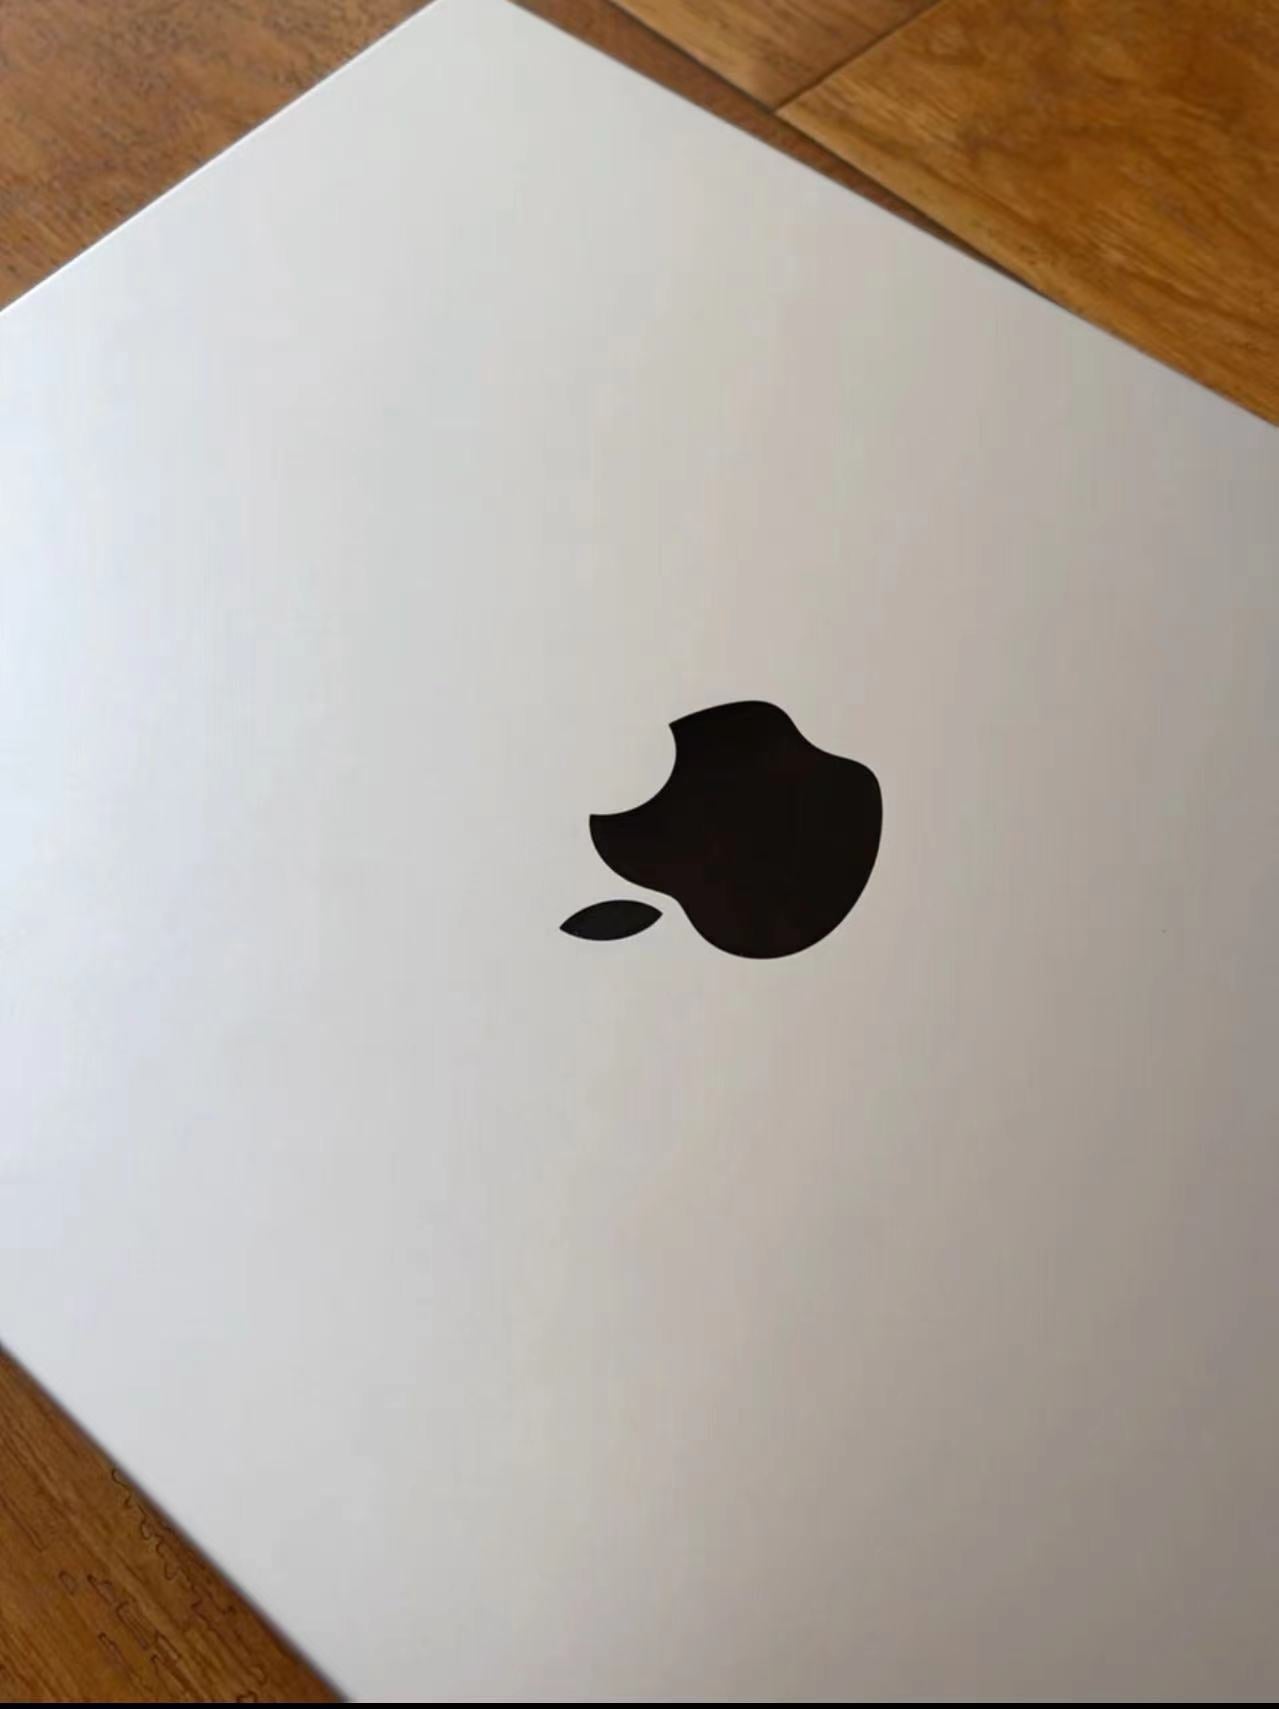 Apple macbook pro 2021